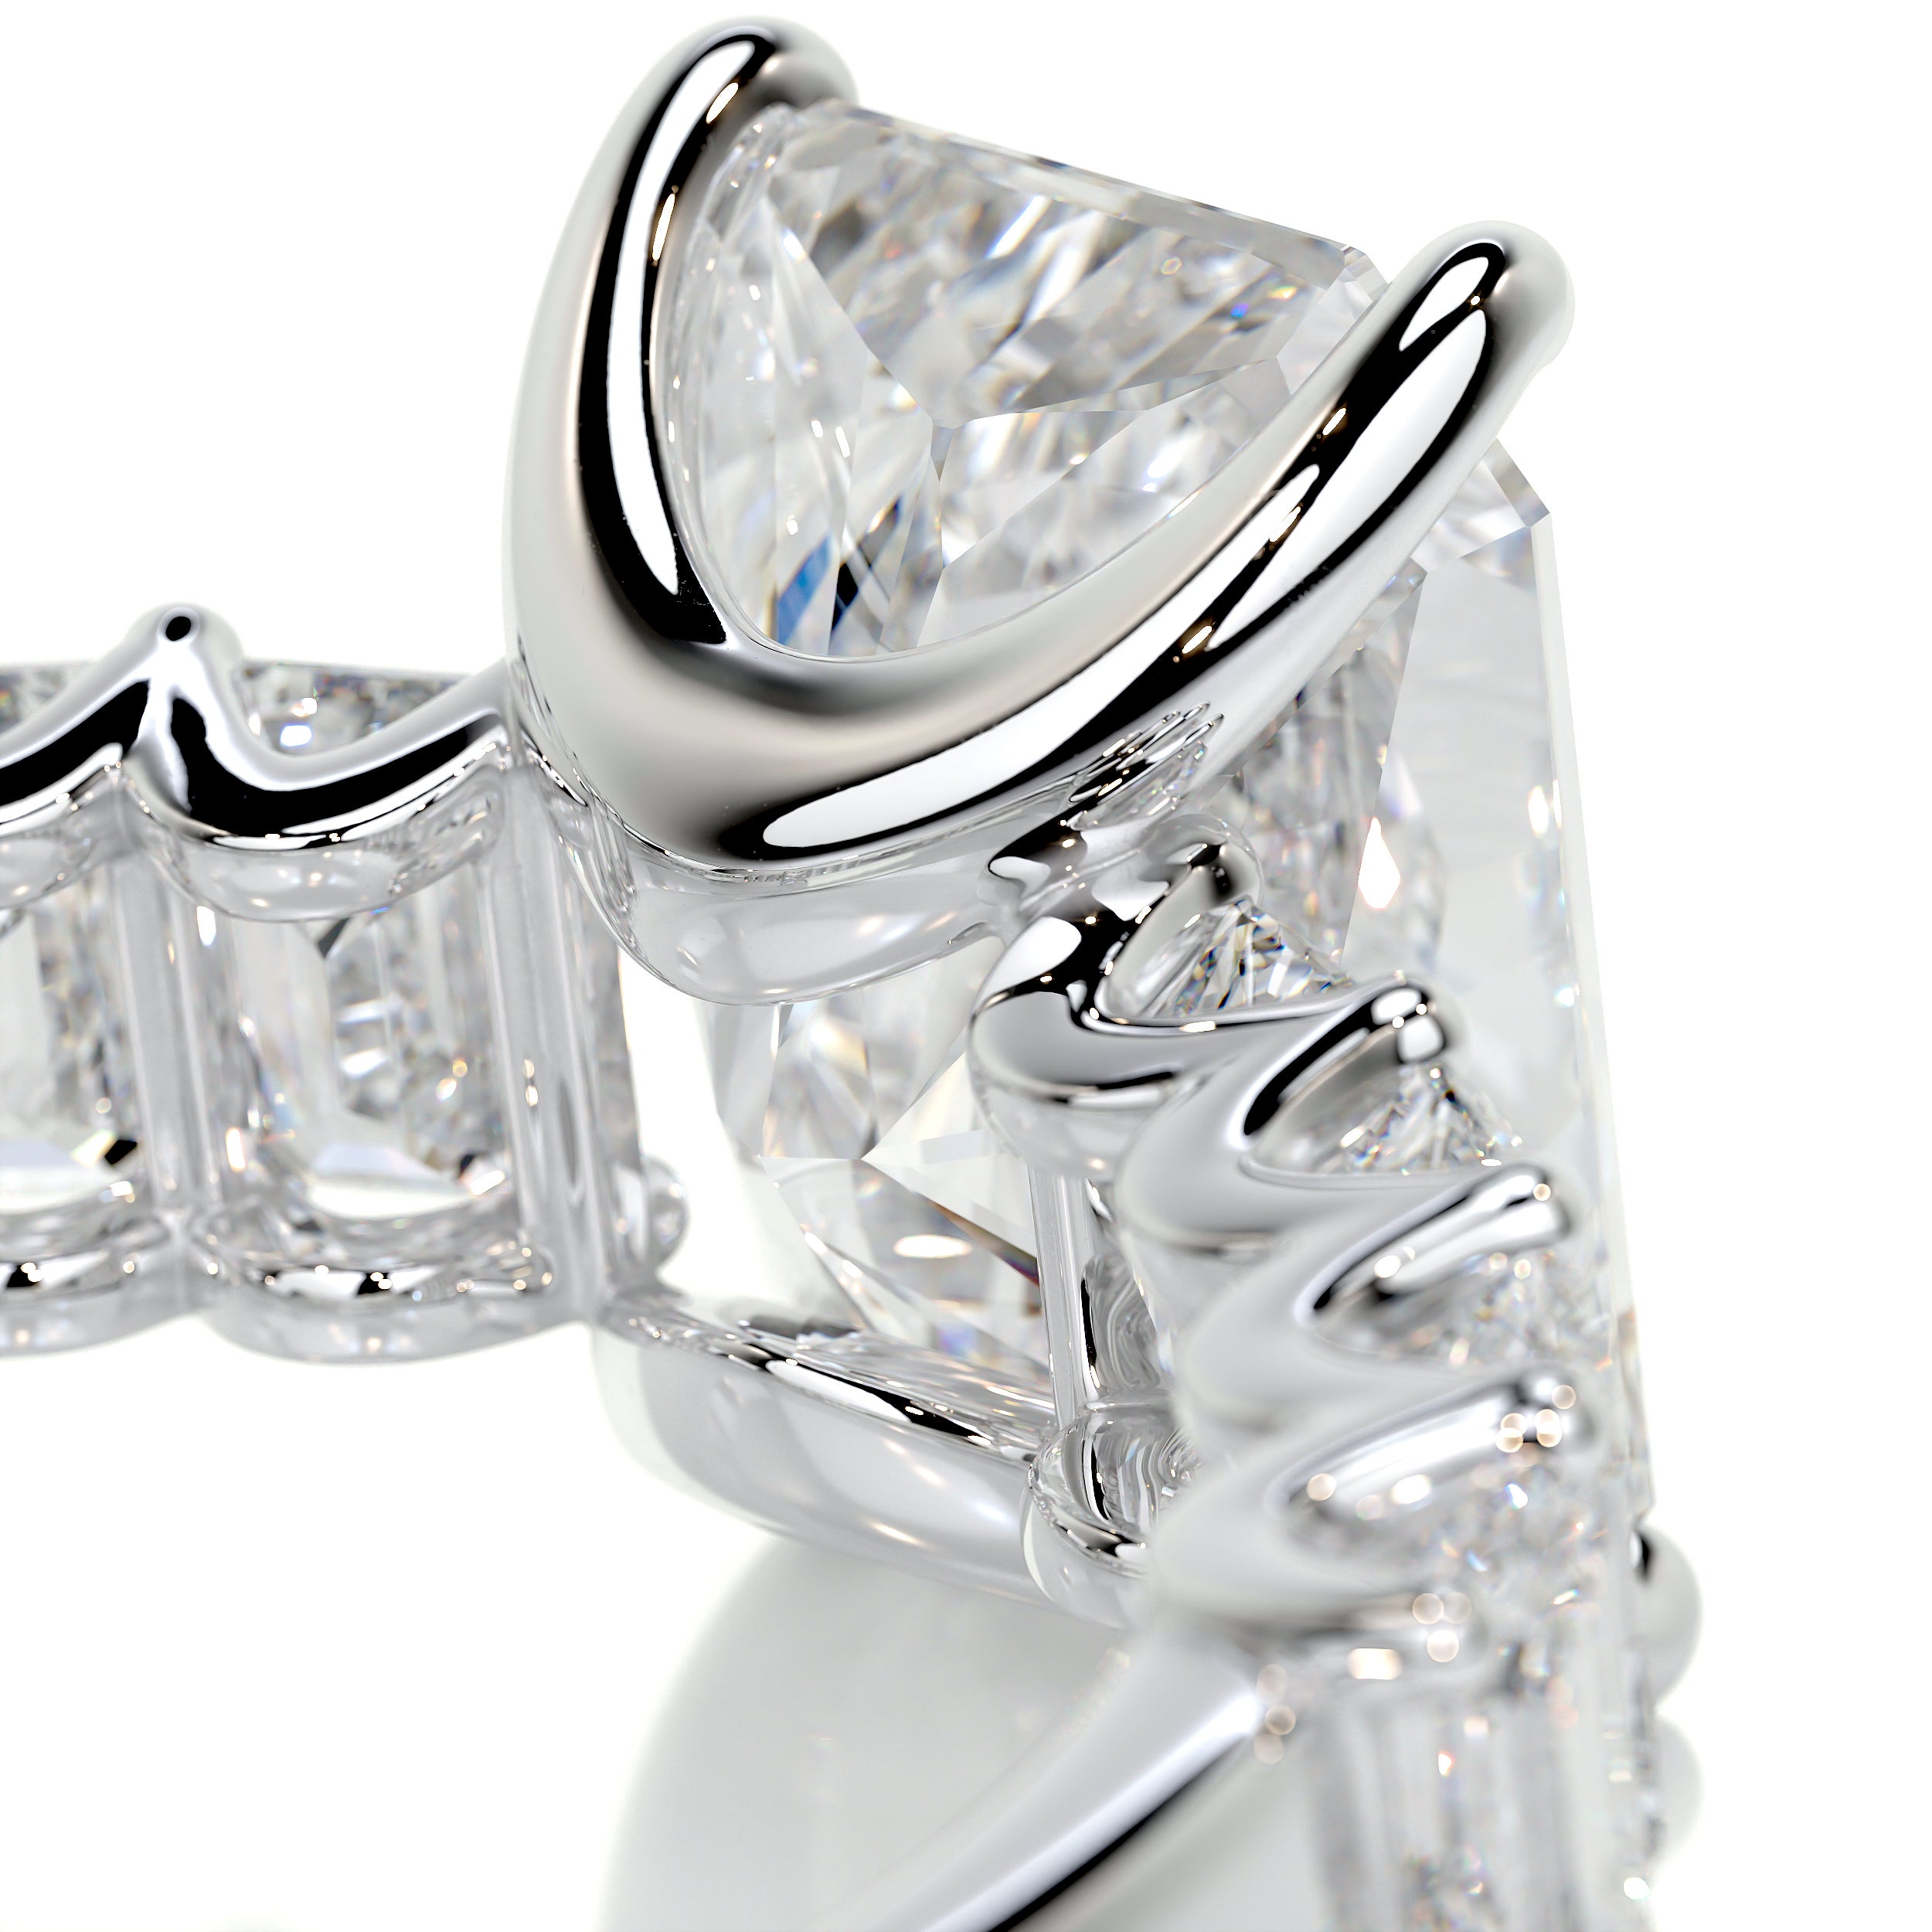 Arabella Diamond Engagement Ring -18K White Gold